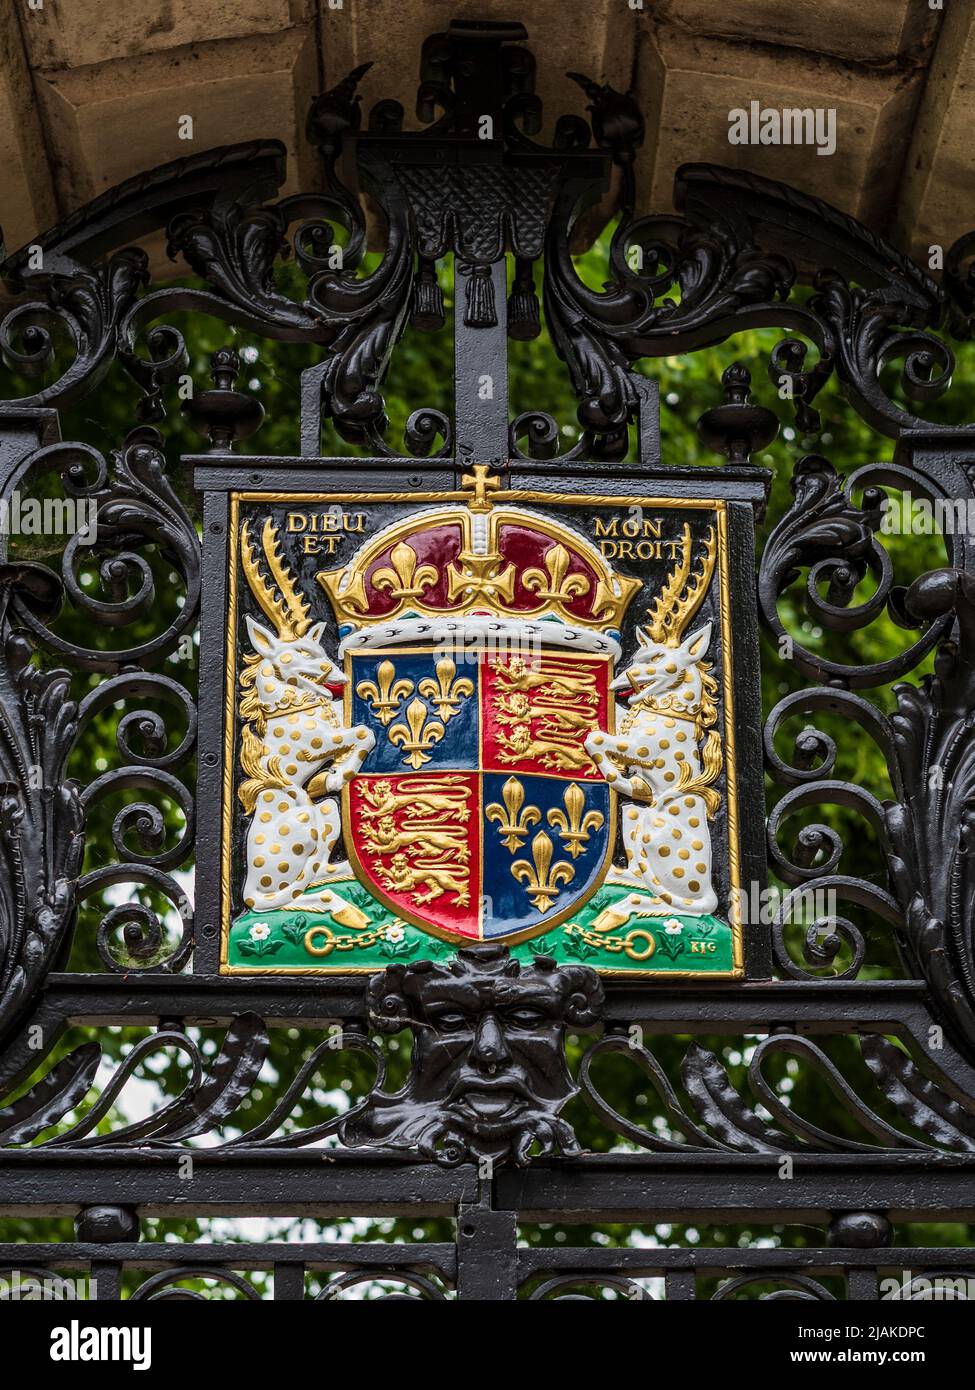 Henry VI armoiries, Kings College Cambridge. Armoiries royales du roi Henry VI, fondateur de Kings College en 1441 Banque D'Images